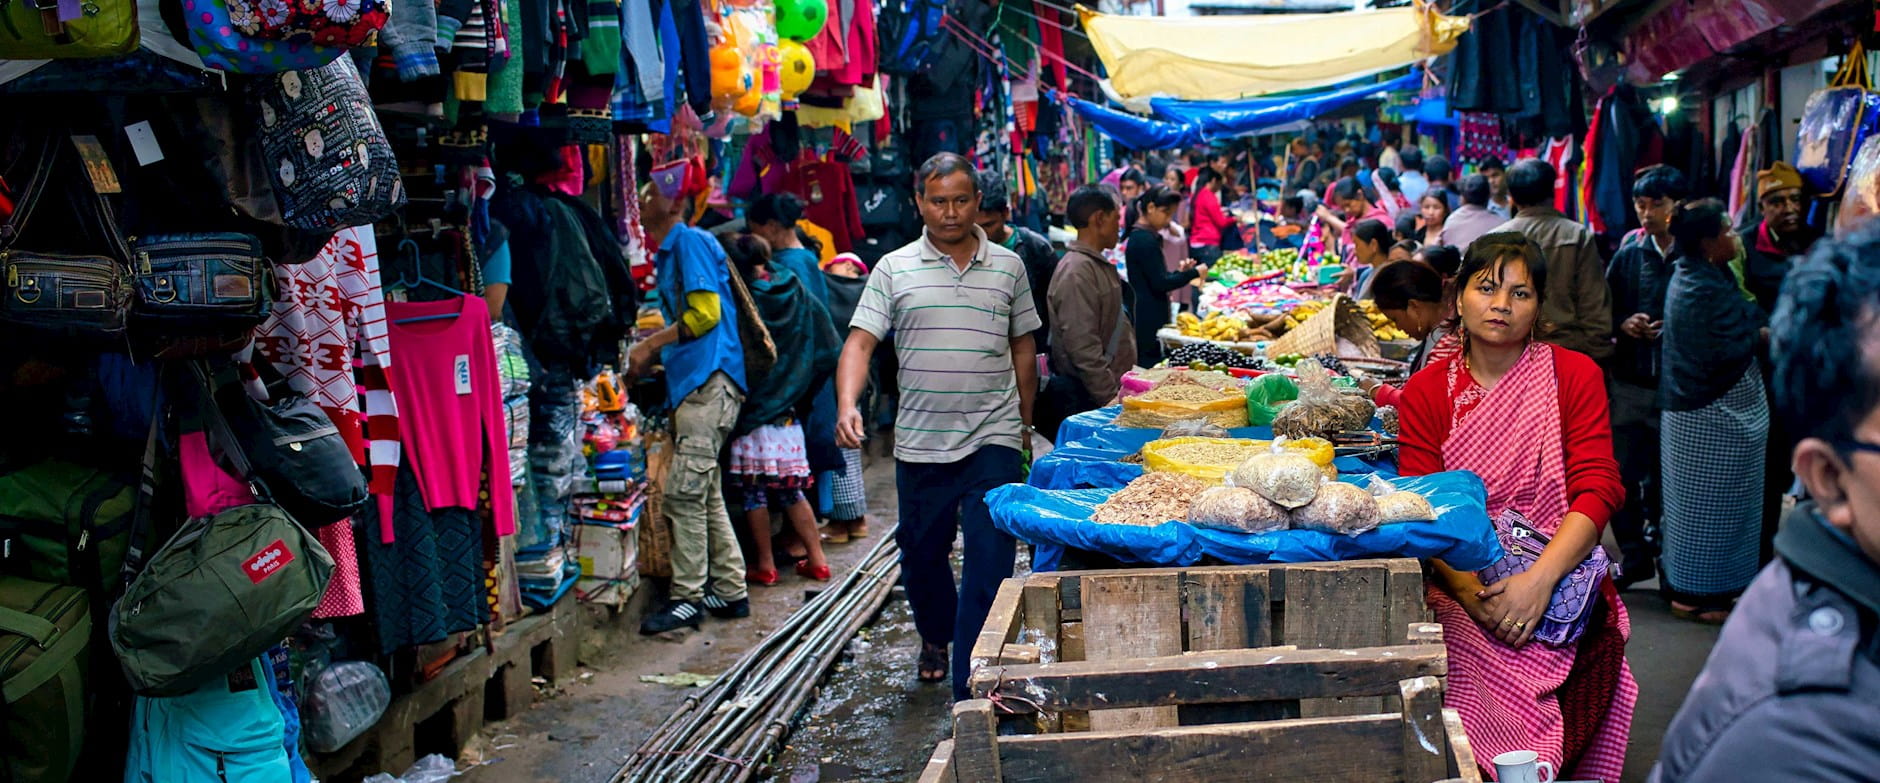 Shops at the Iewduh Bara Bazar in Shillong, India